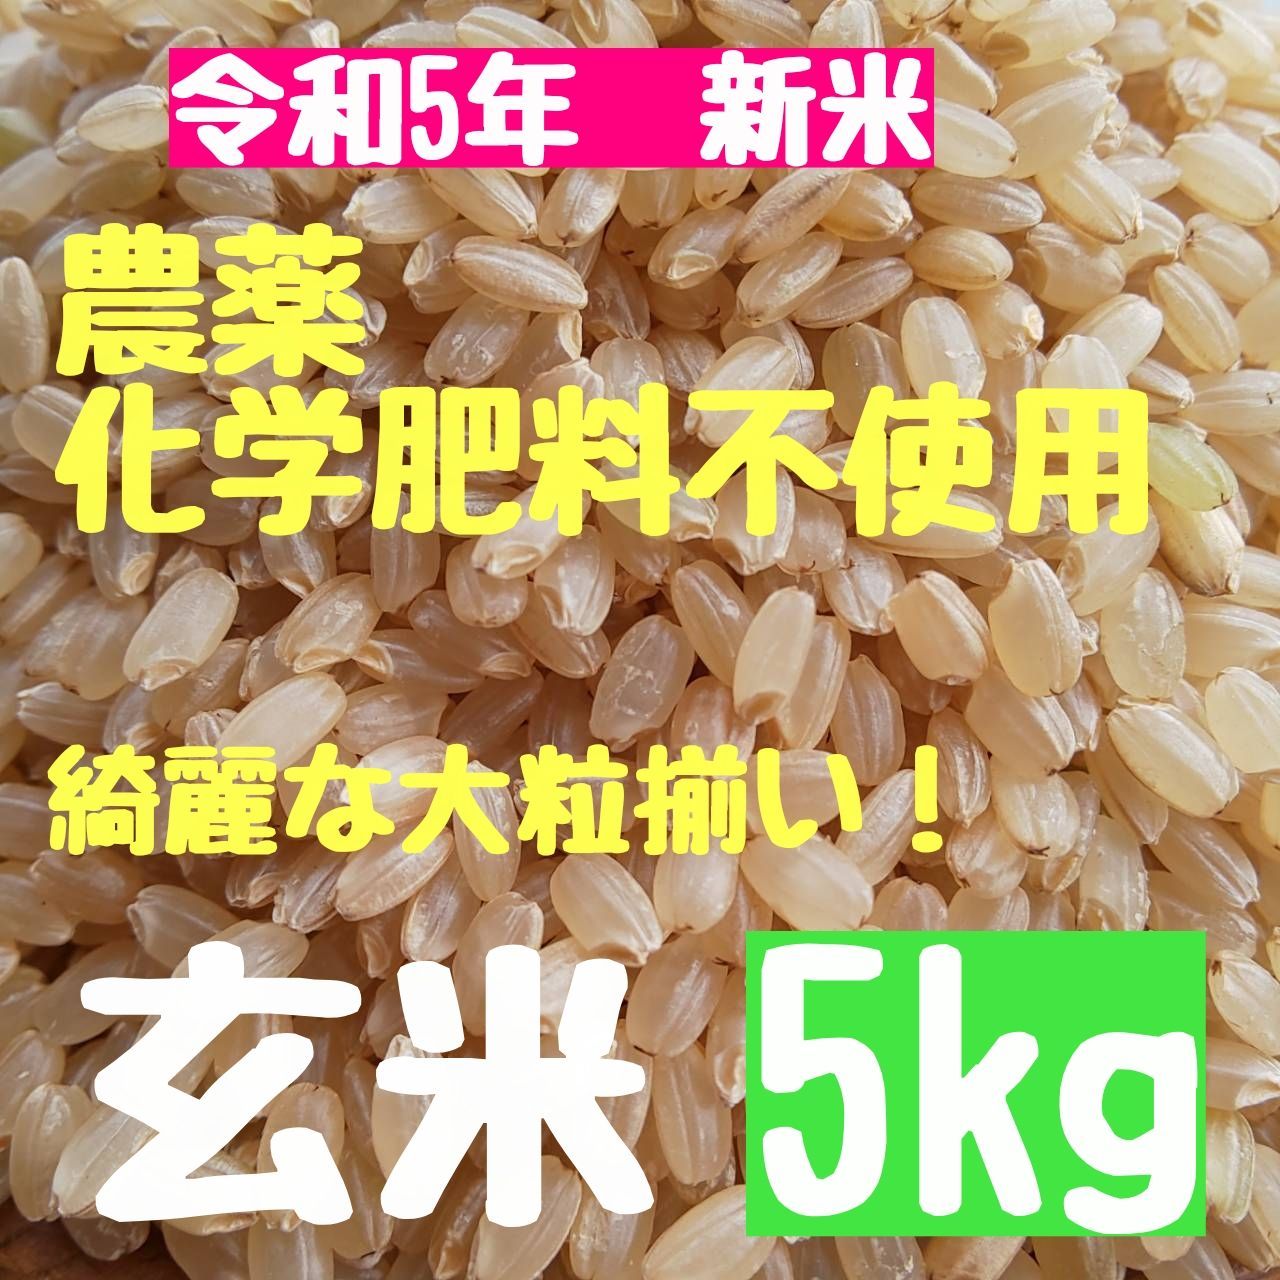 農家直送 自然栽培無農薬 玄米30kg 菊池米七城町栽培 - 米